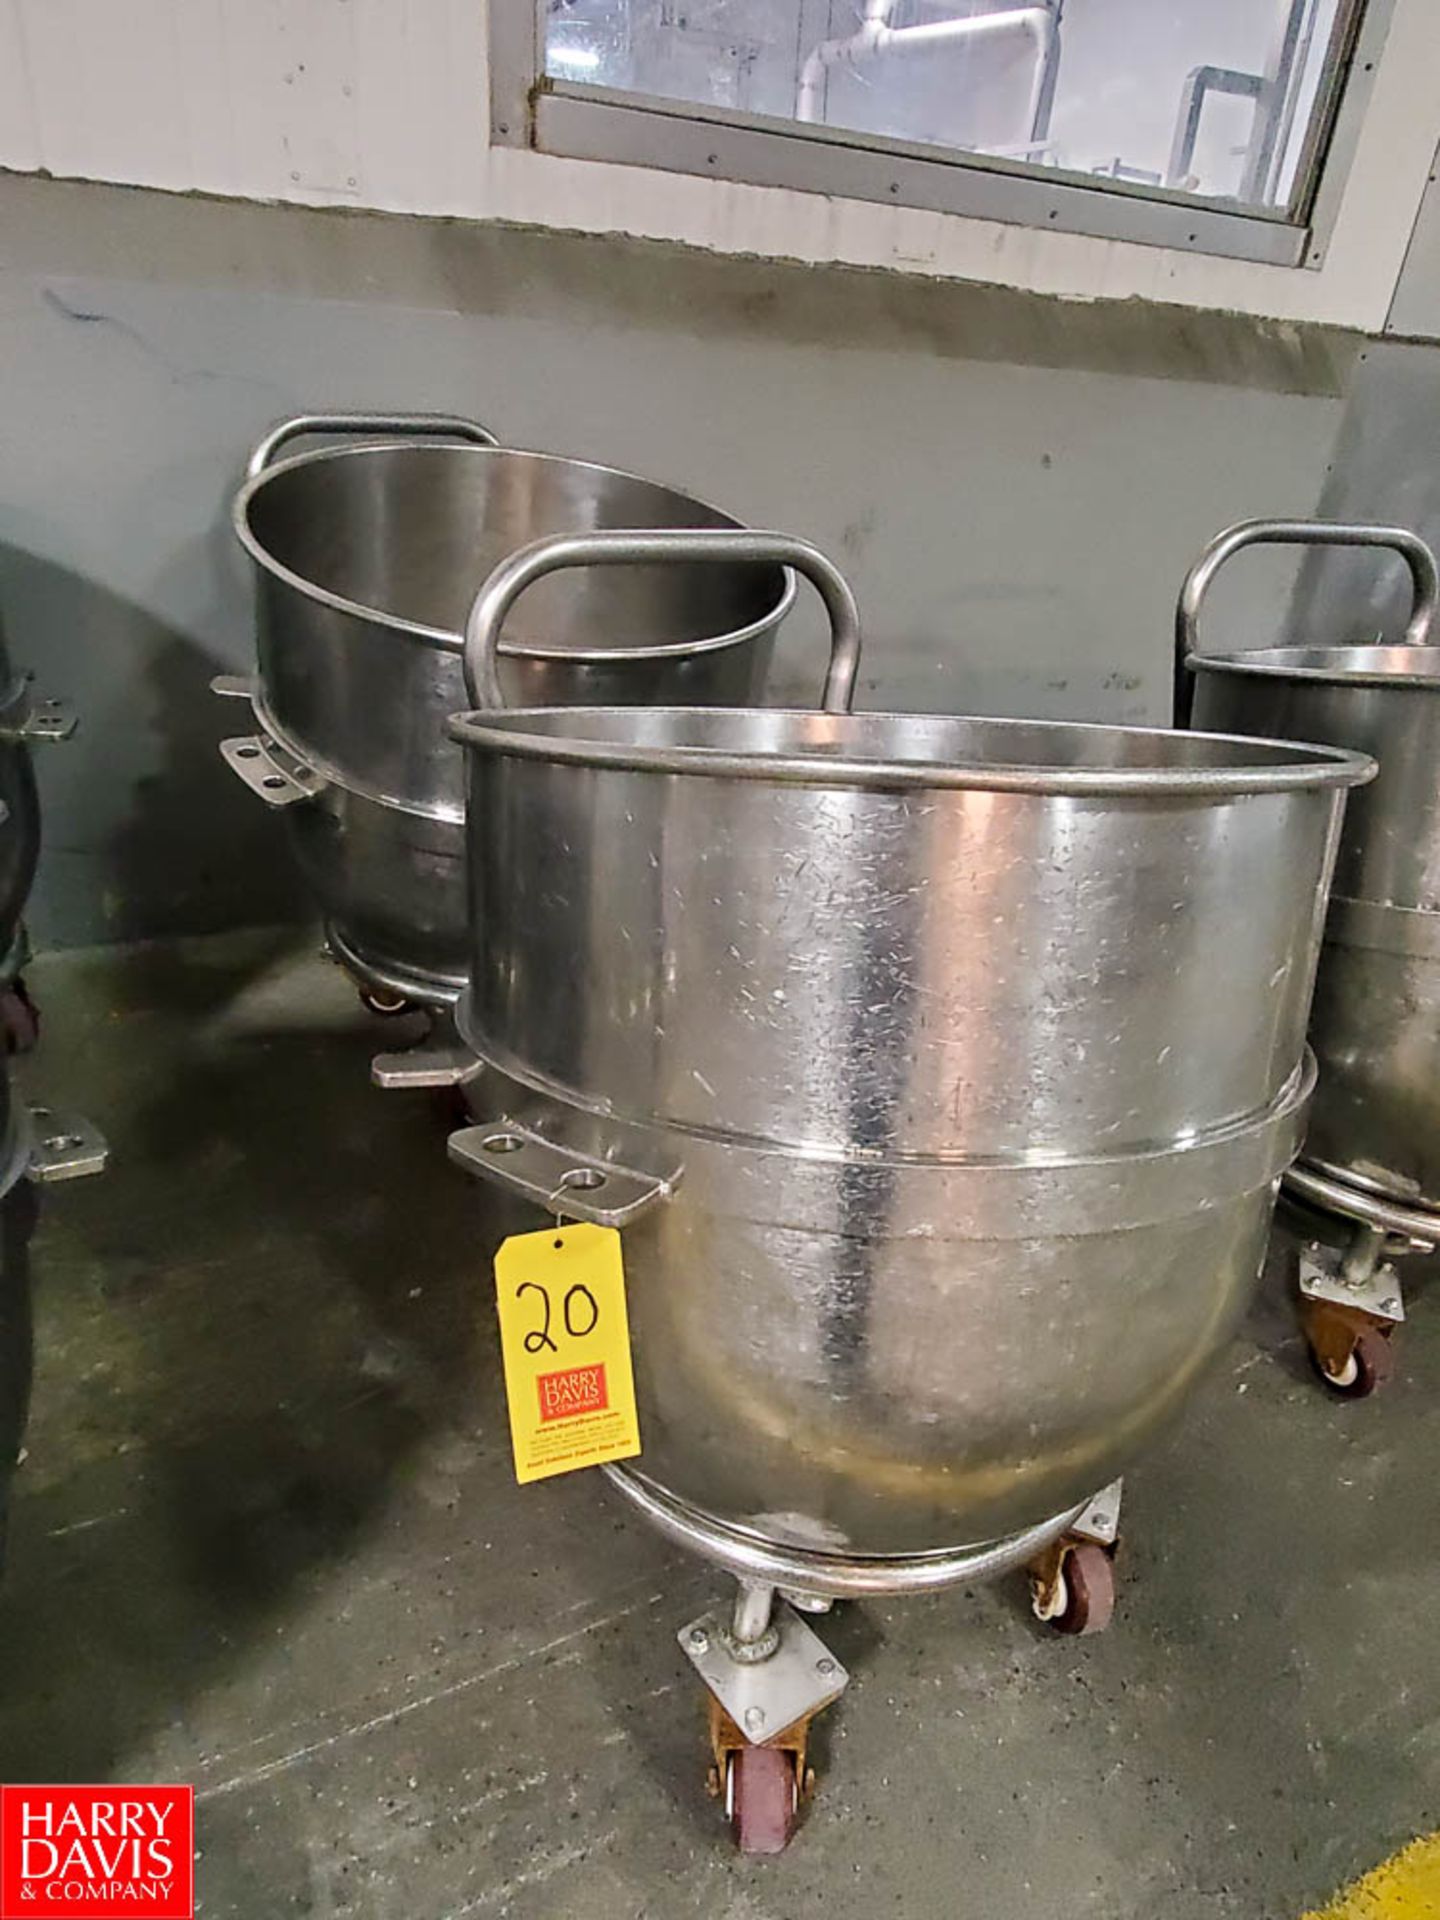 Aprox 140 Quart S/S Mixer Bowl Rigging Fee: $ 20